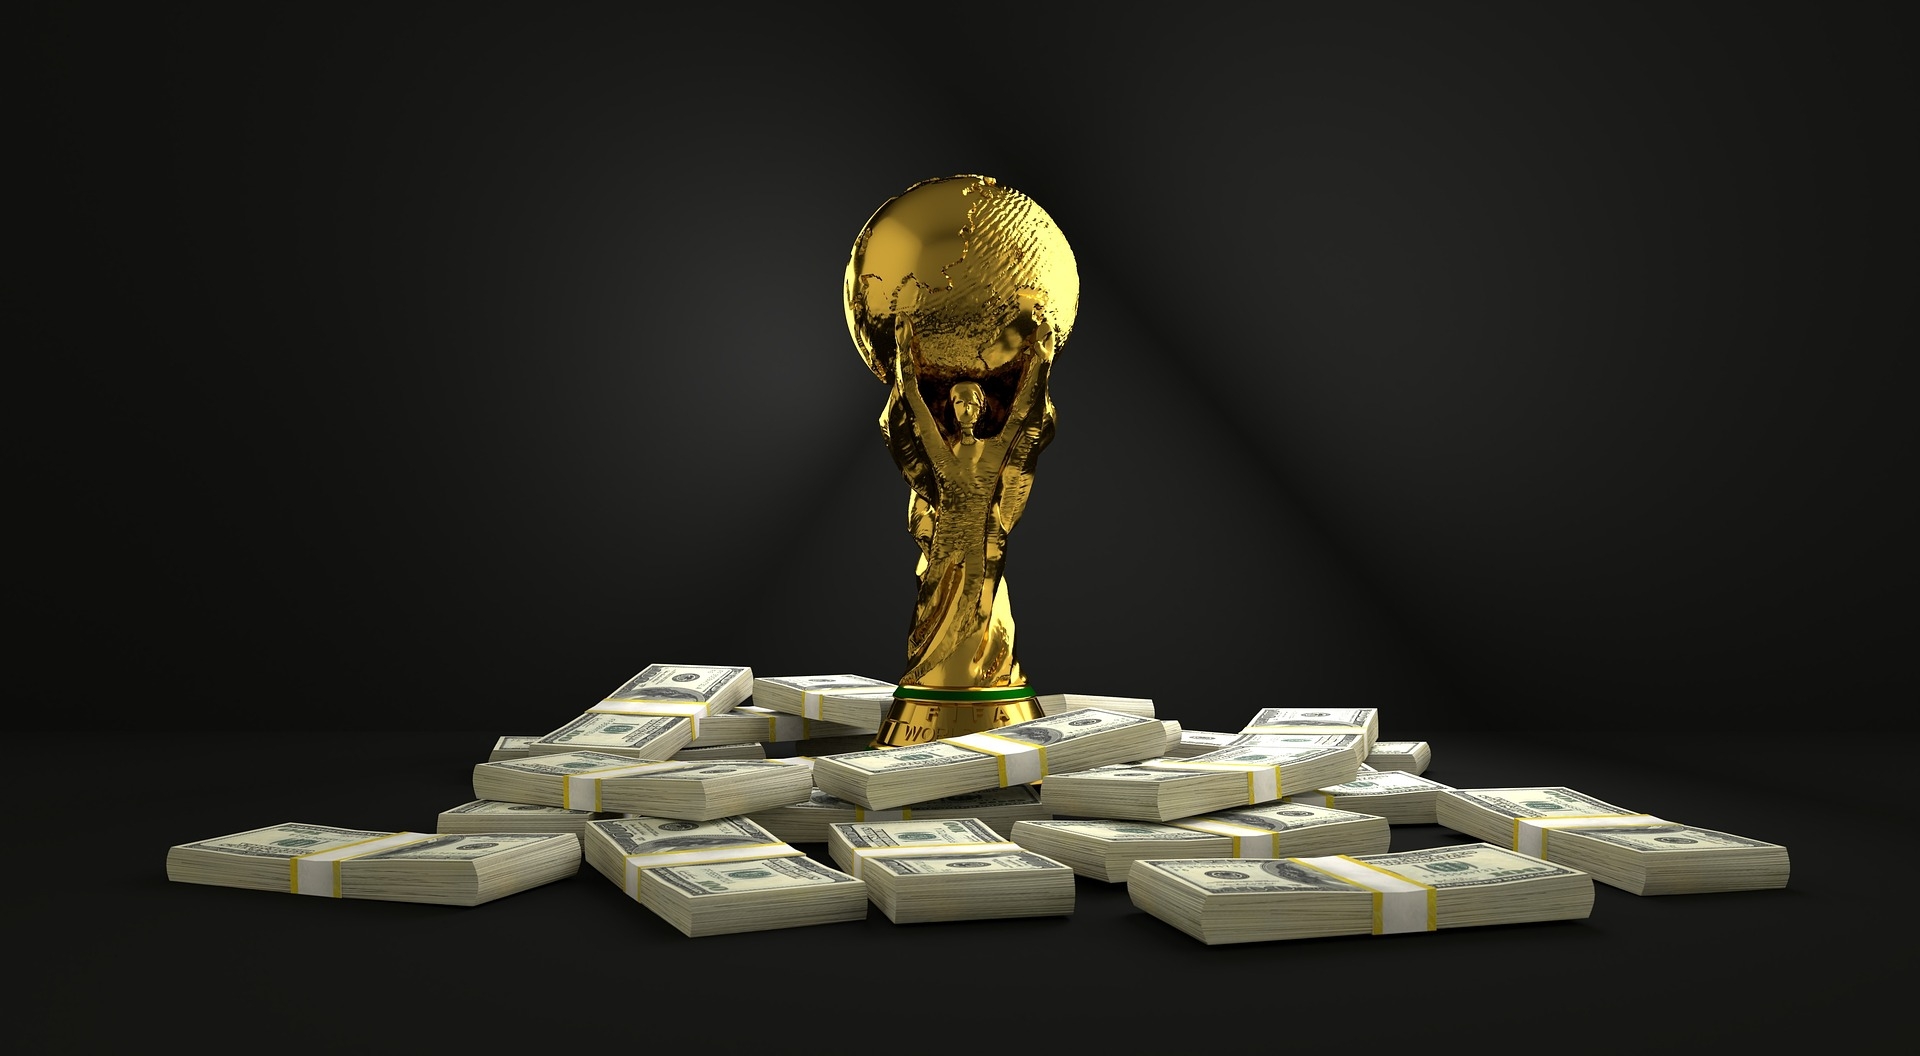  Coupe du monde : quatre raisons de la suivre / ne pas la suivre